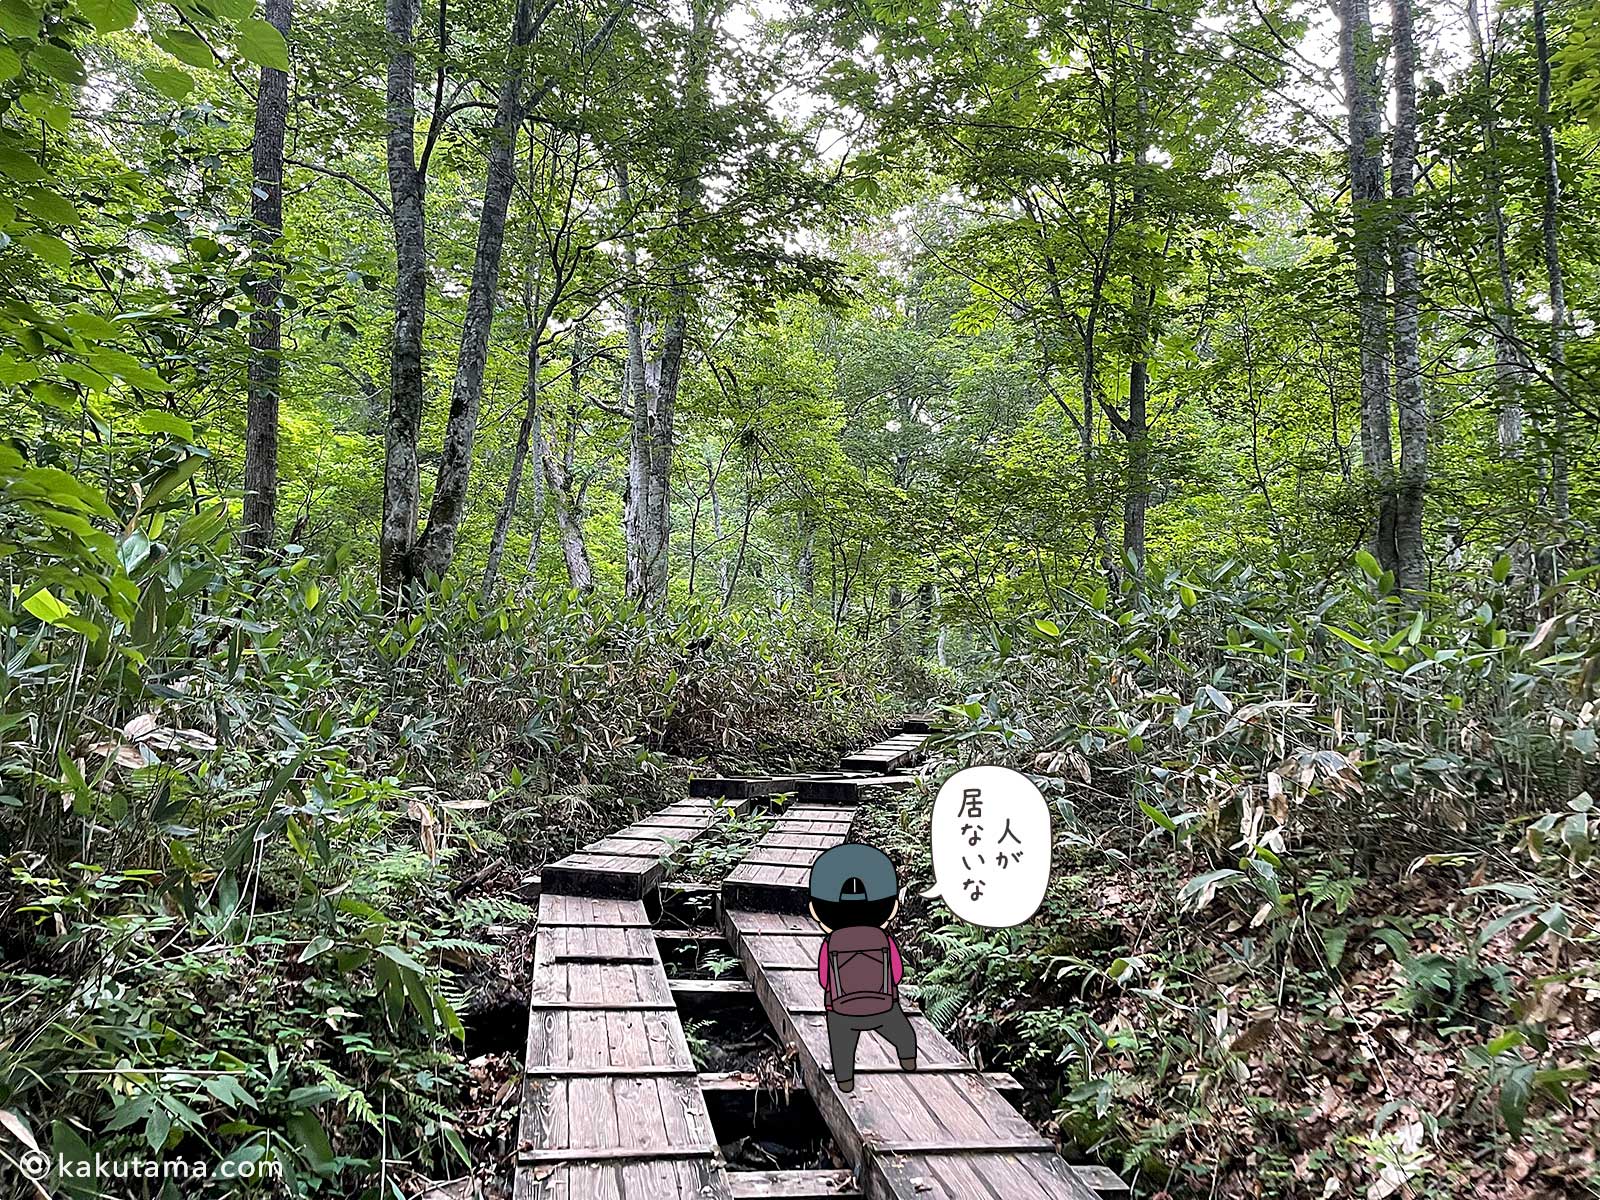 人の居ない尾瀬の木道の写真と登山者のイラスト